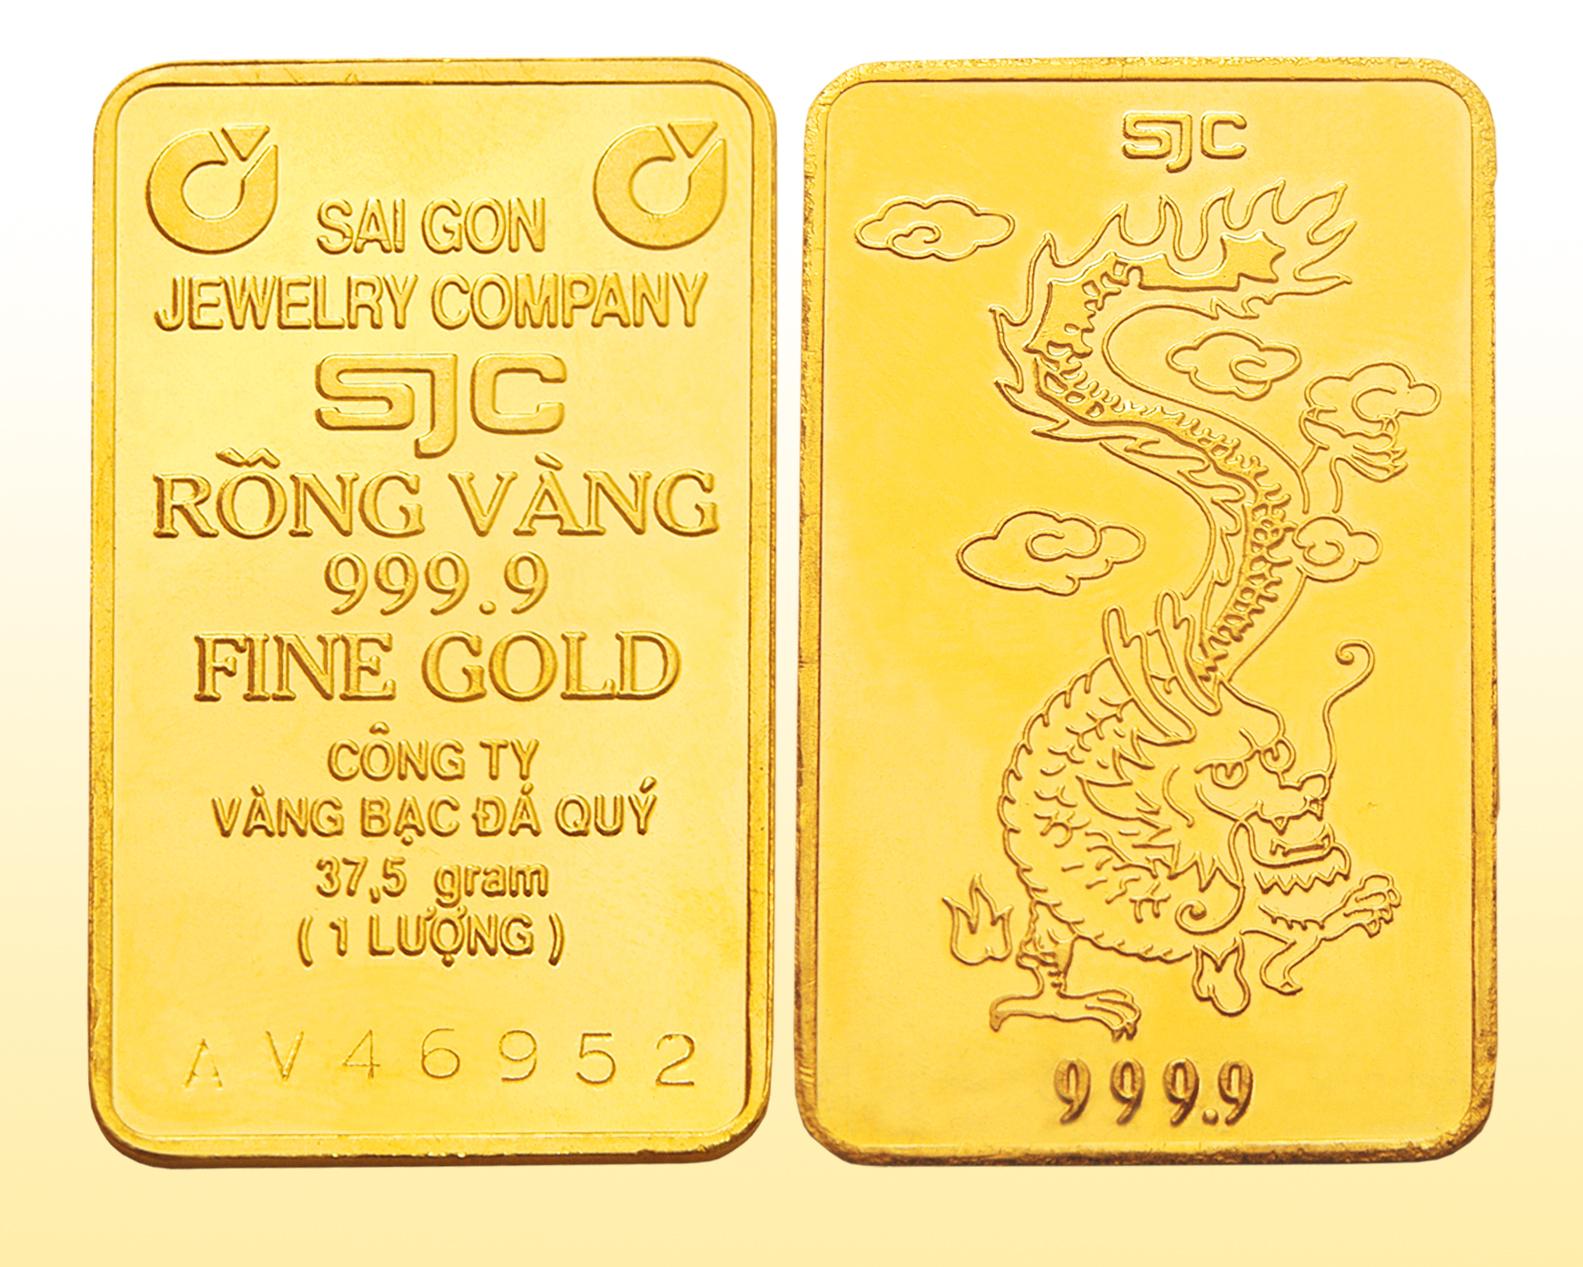 Vàng SJC là một nhãn hiệu vàng do Công ty vàng bạc đá quý Sài Gòn sản xuất